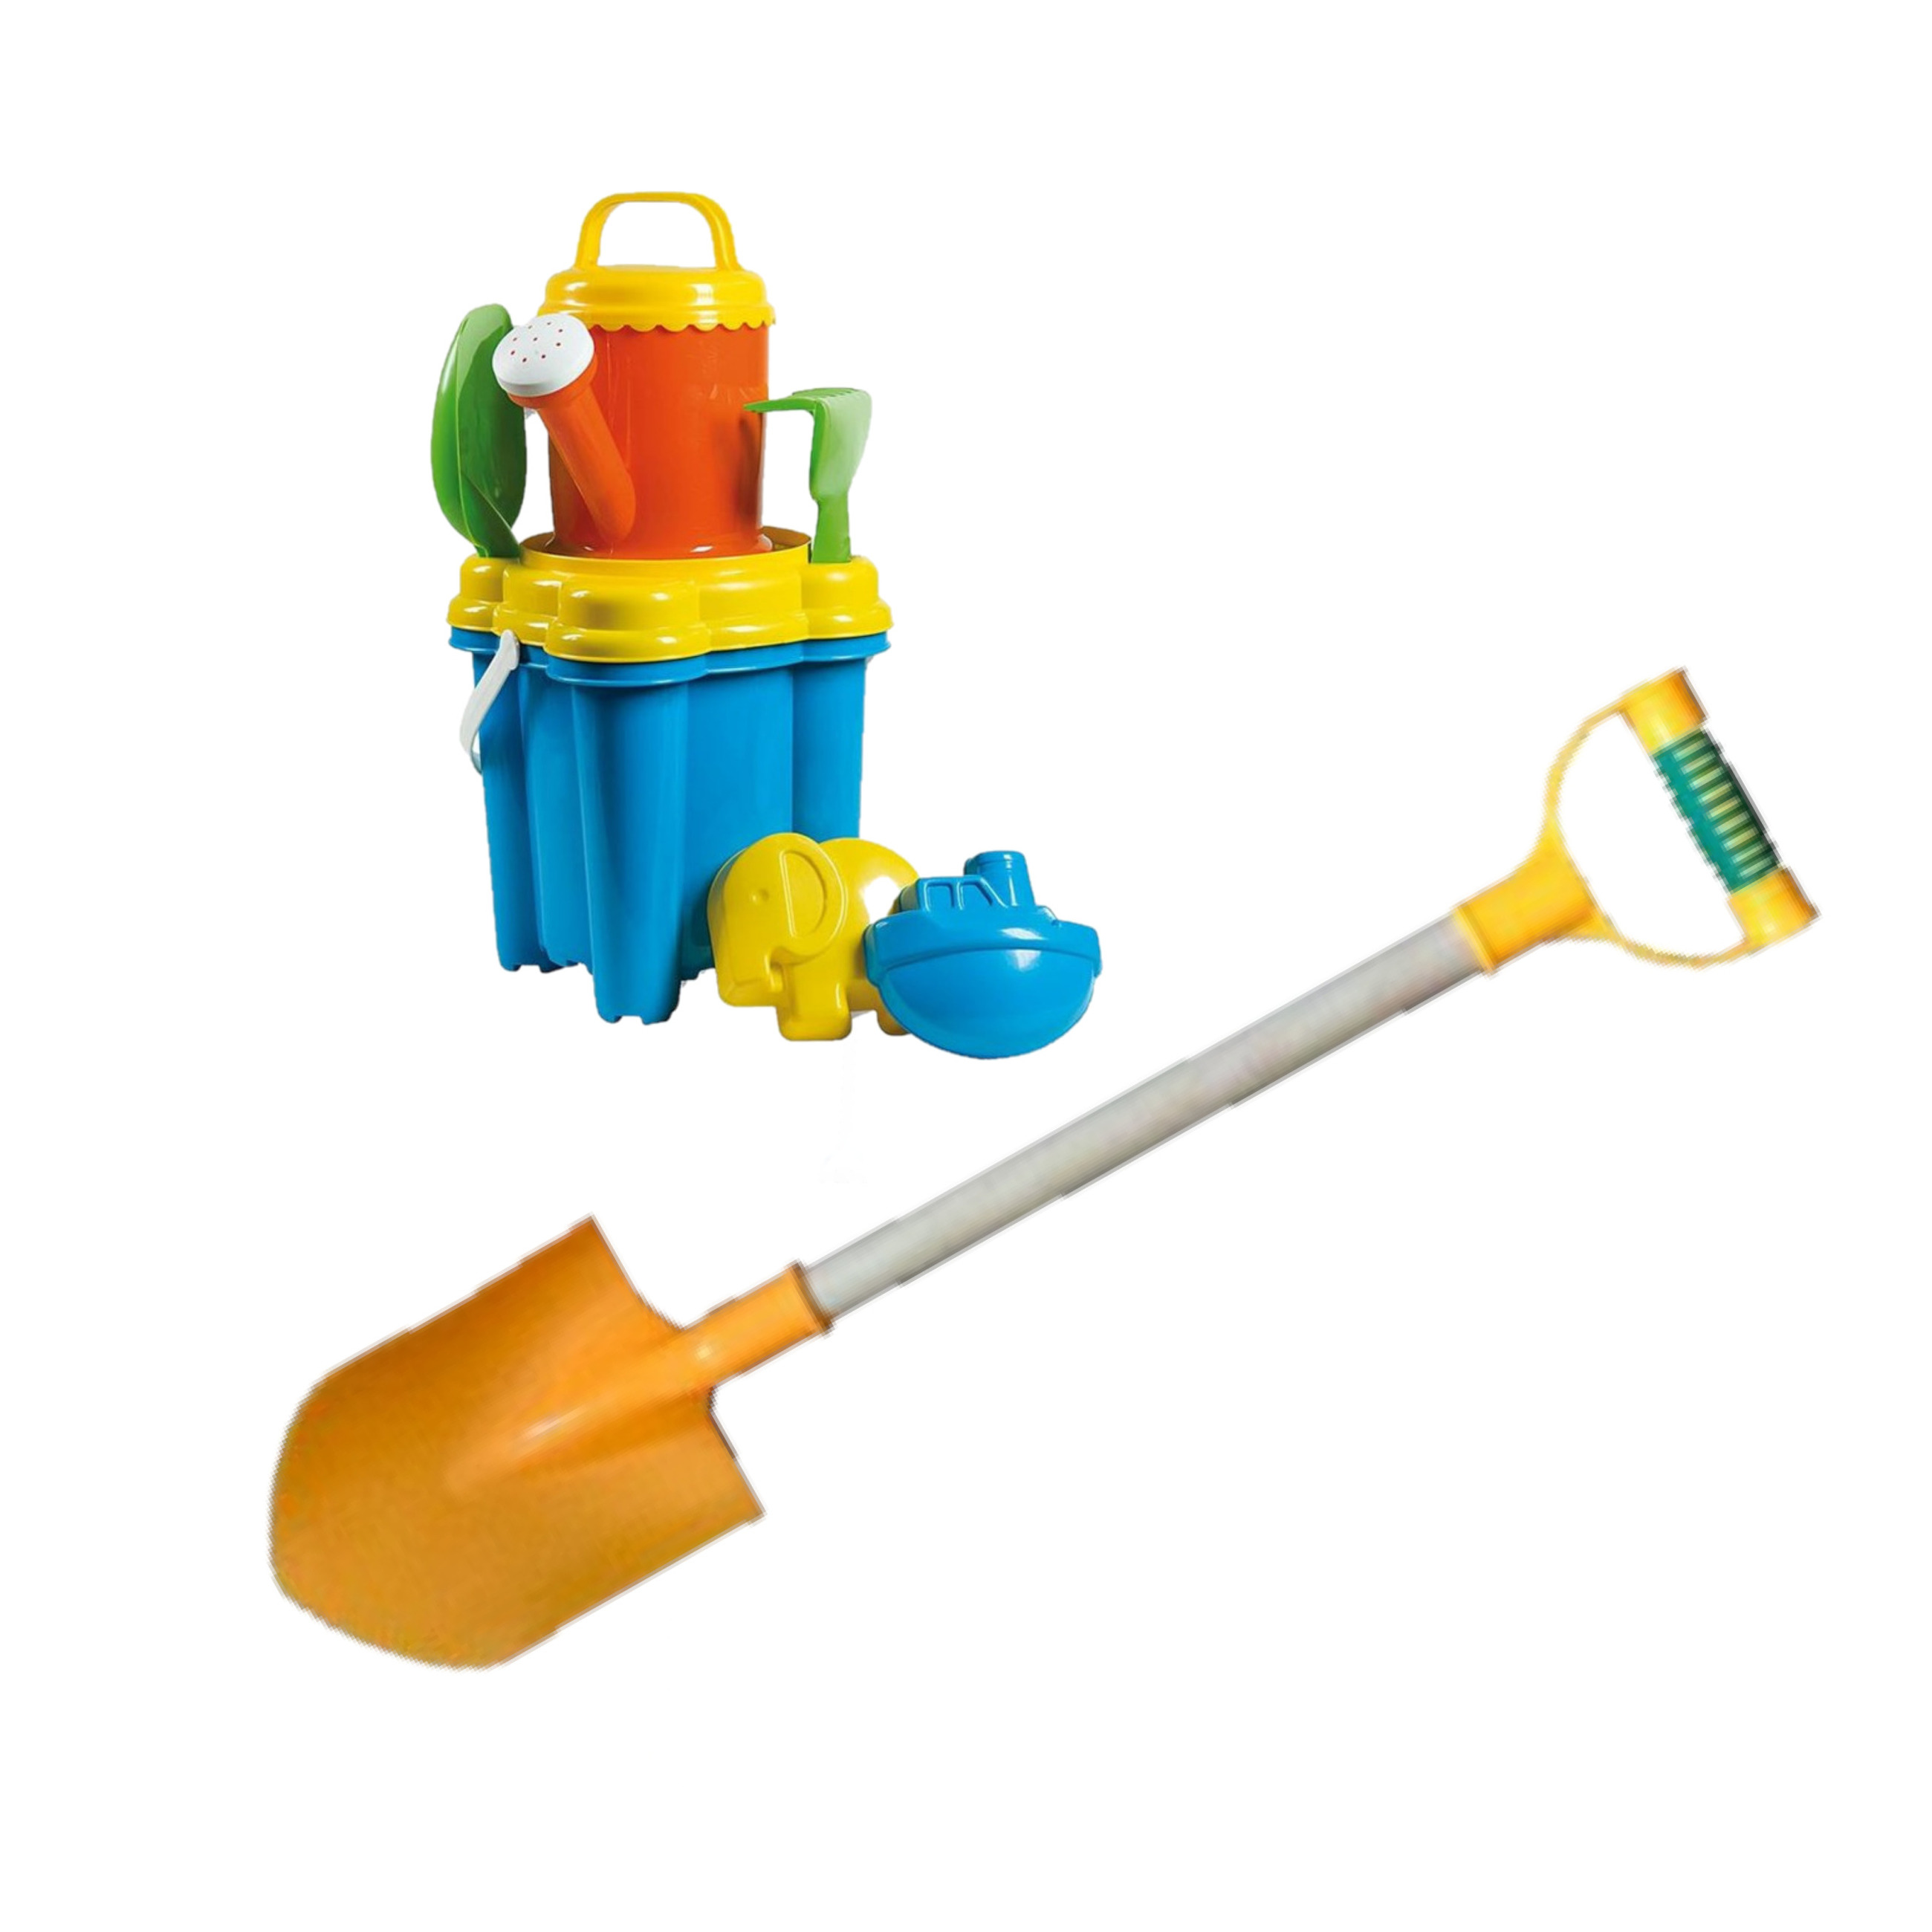 Strand-zandbak speelgoed emmer met vormpjes en kleine schepjes + grote zandschep van 55 cm